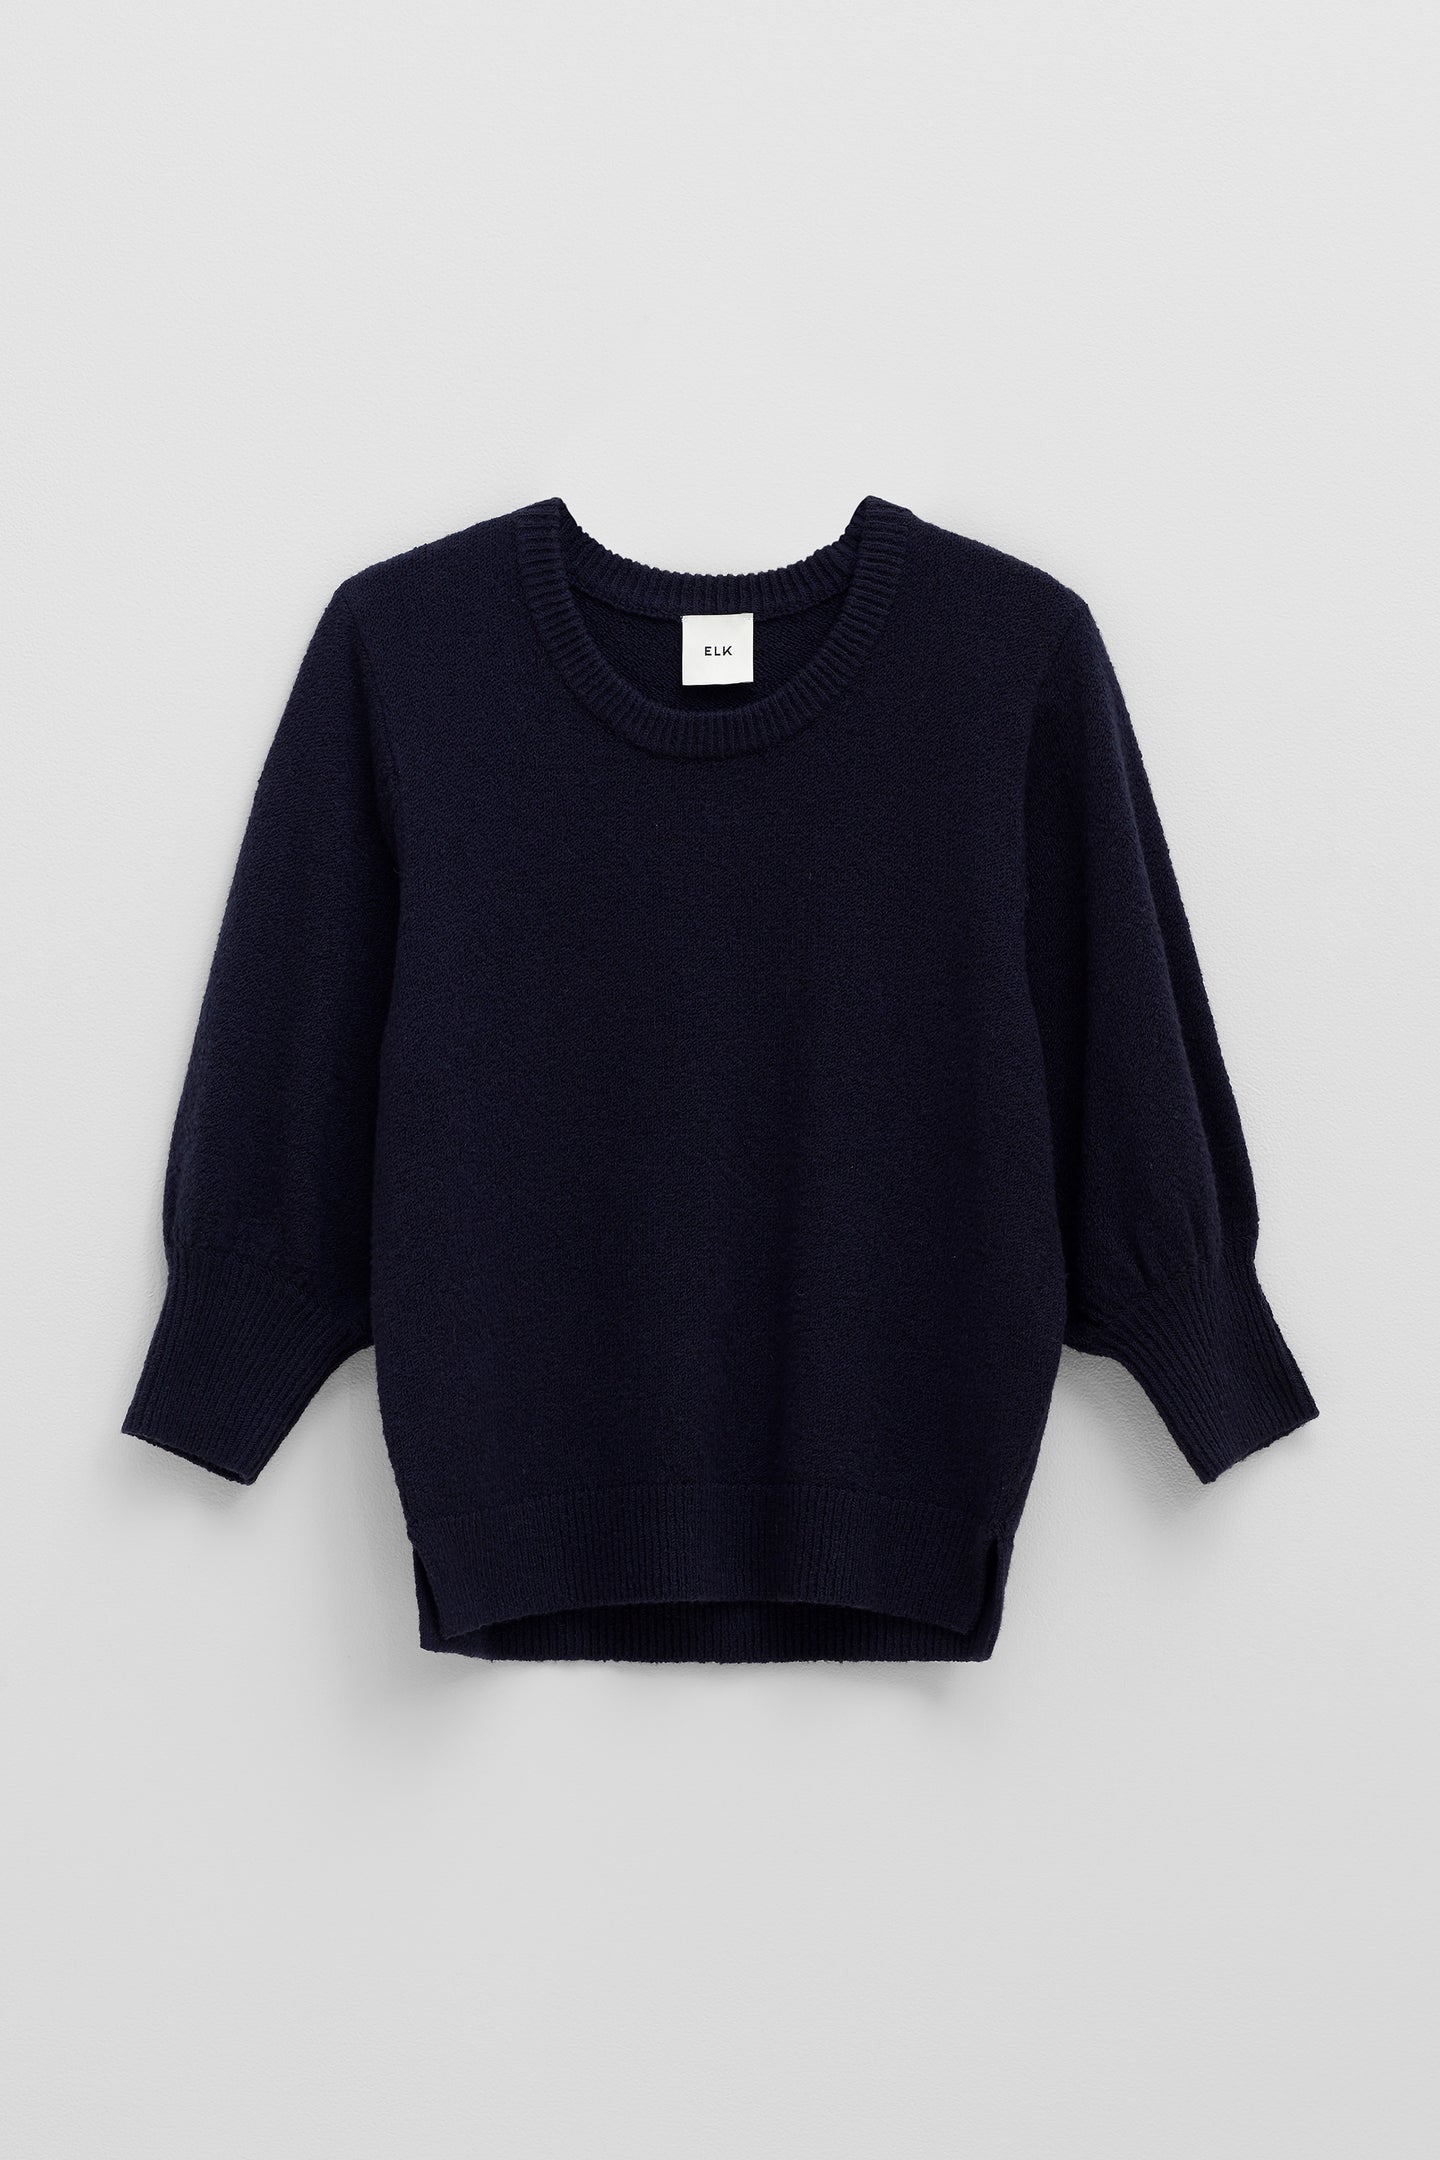 Farren Sweater